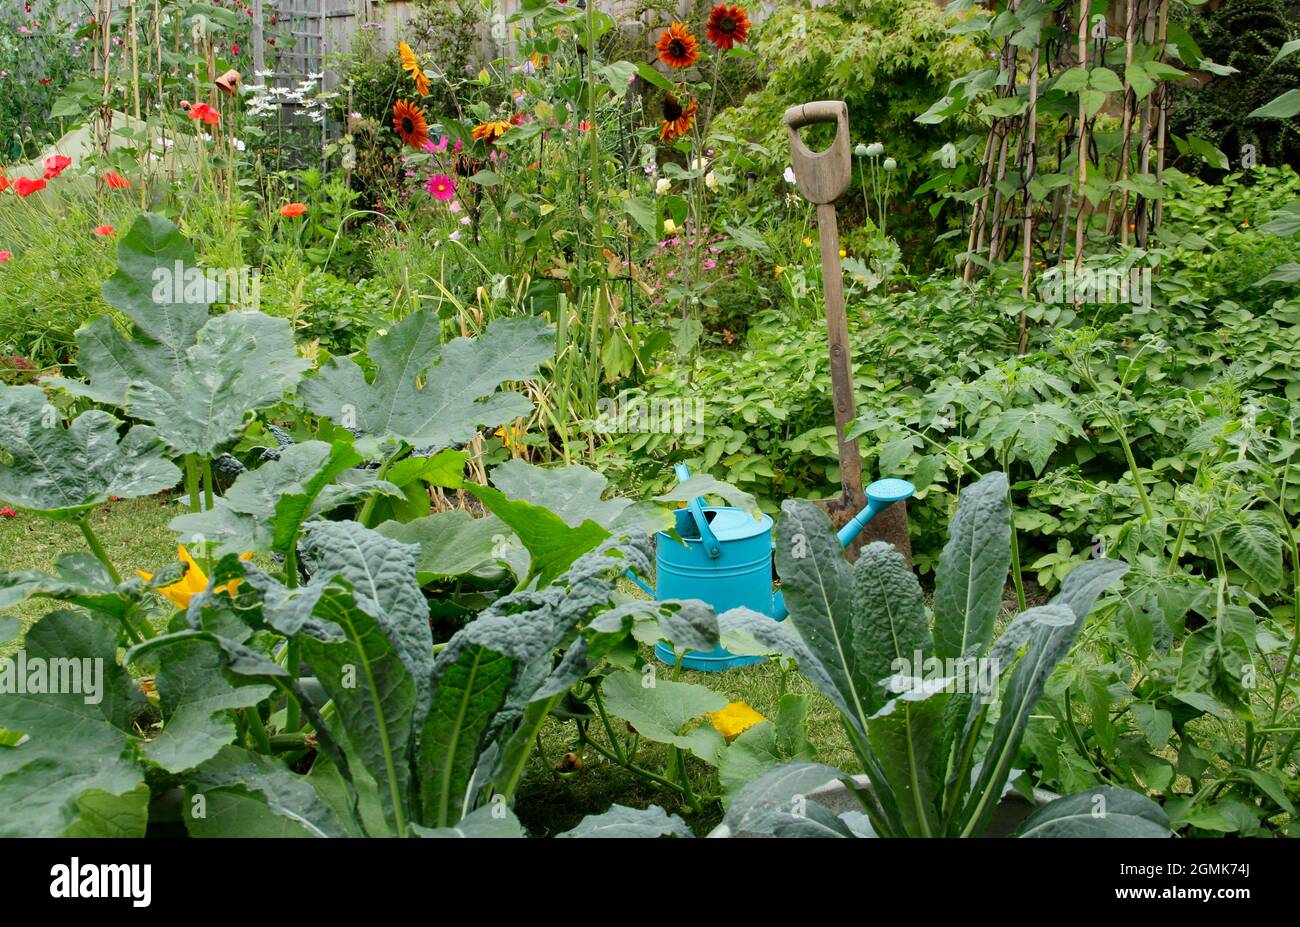 Un jardin potager avec des haricots français, des pommes de terre, du cavalo nero kale, de l'ail et plus ainsi que des fleurs de pois doux, de tournesol, de marigold et de cosmos. ROYAUME-UNI Banque D'Images